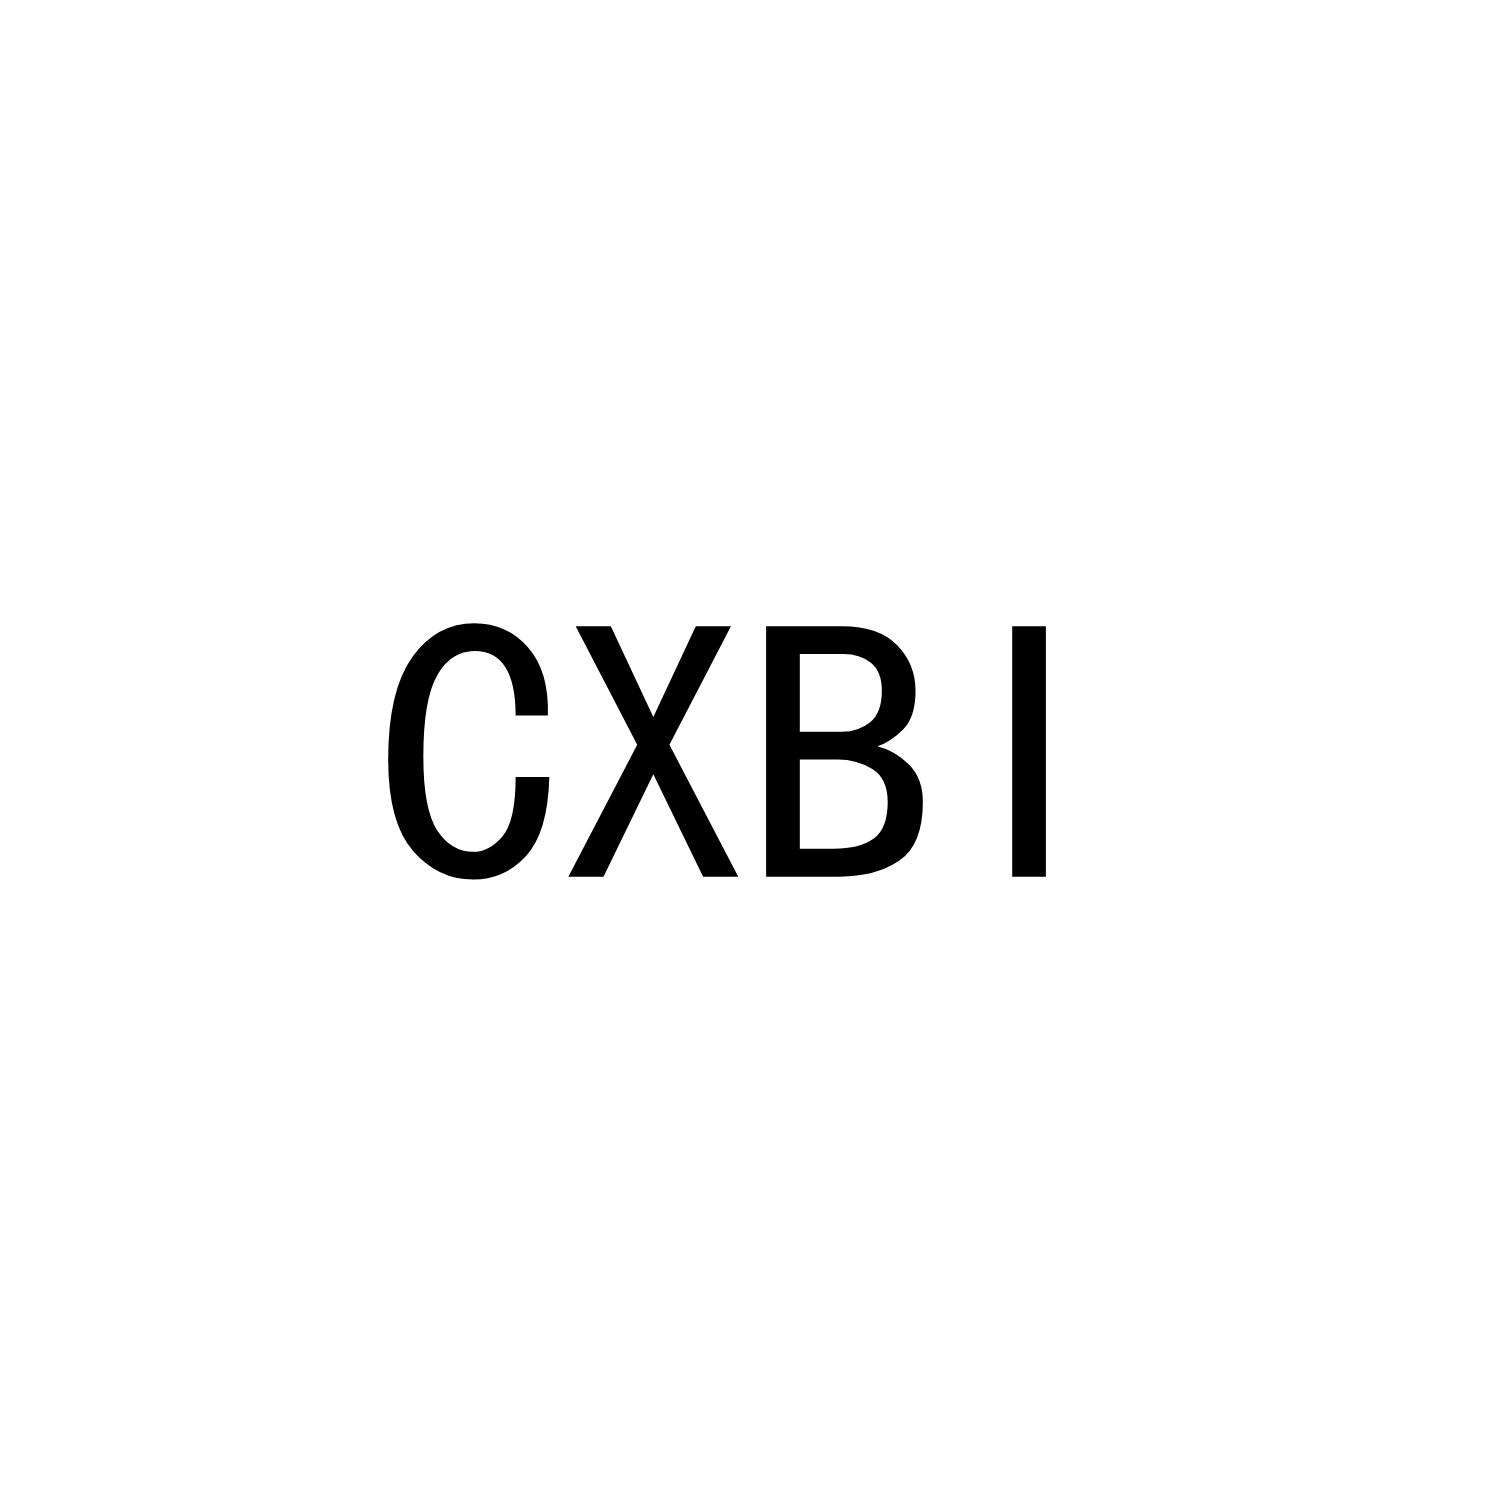 CXBI